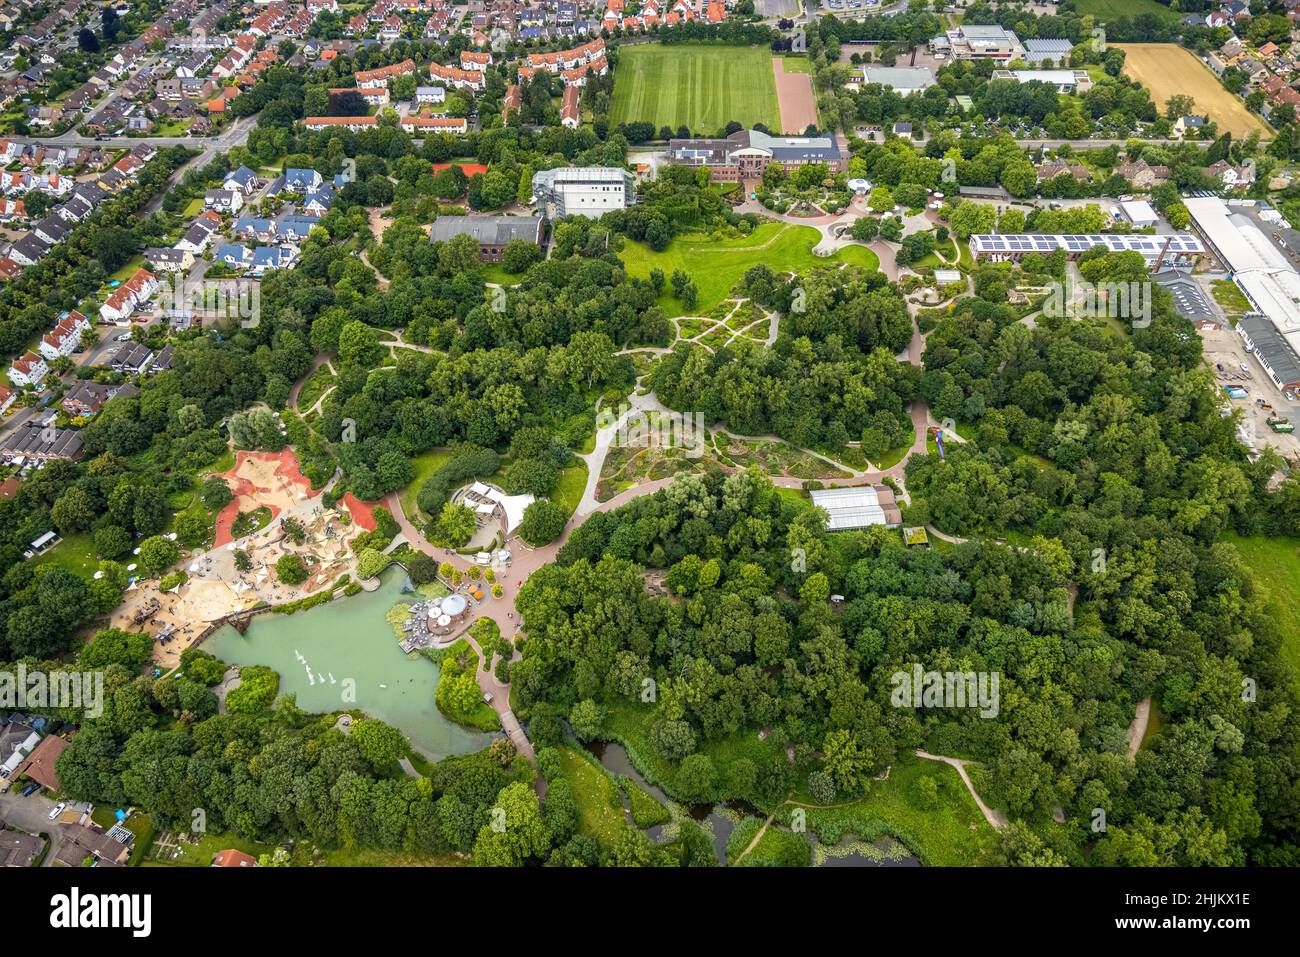 Vista aerea, parco divertimenti Maximilianpark, Uentrop, Hamm, zona della Ruhr, Renania settentrionale-Vestfalia, Germania, DE, Europa, strutture per il tempo libero, attività per il tempo libero Foto Stock